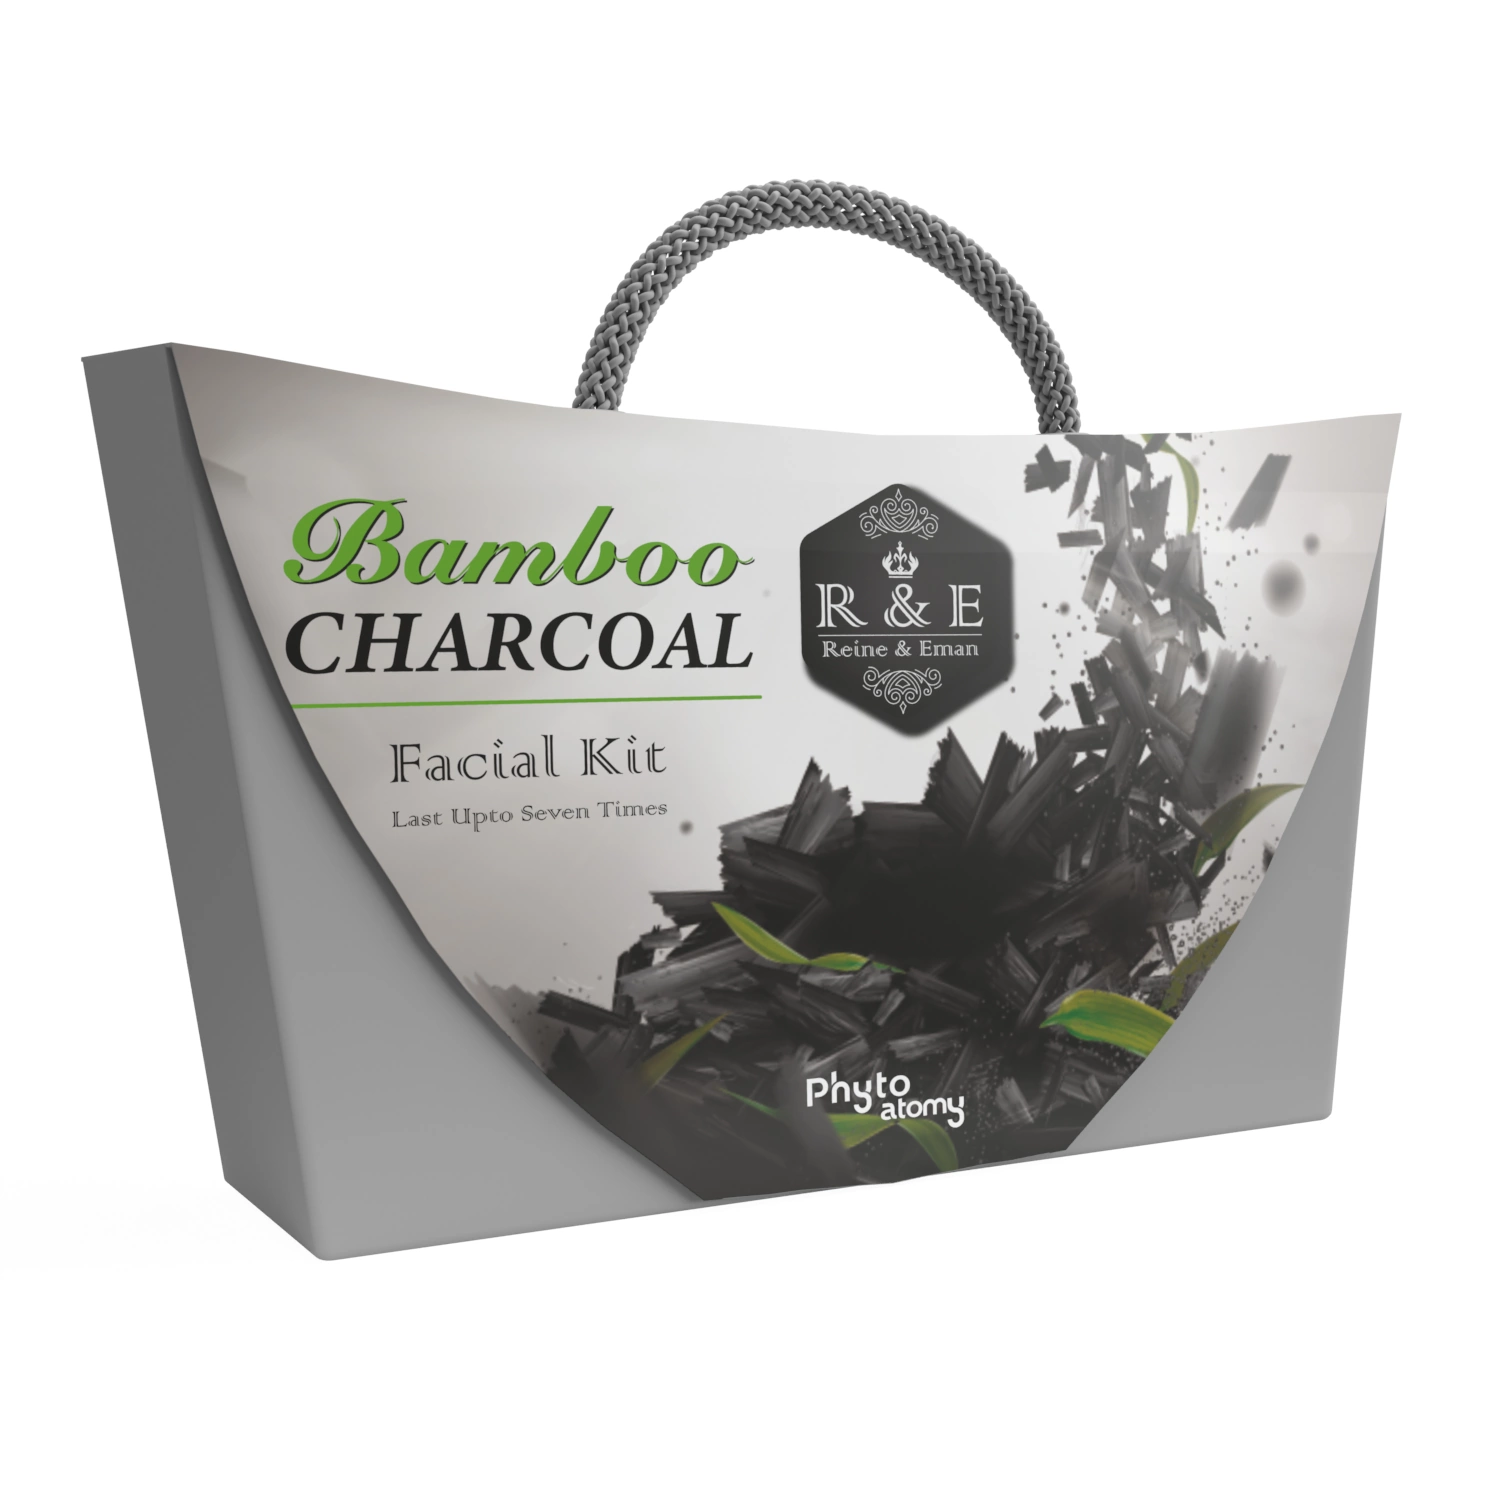 SCBV B2B R & E Bamboo Charcoal Facial Kit 4 Pcs.